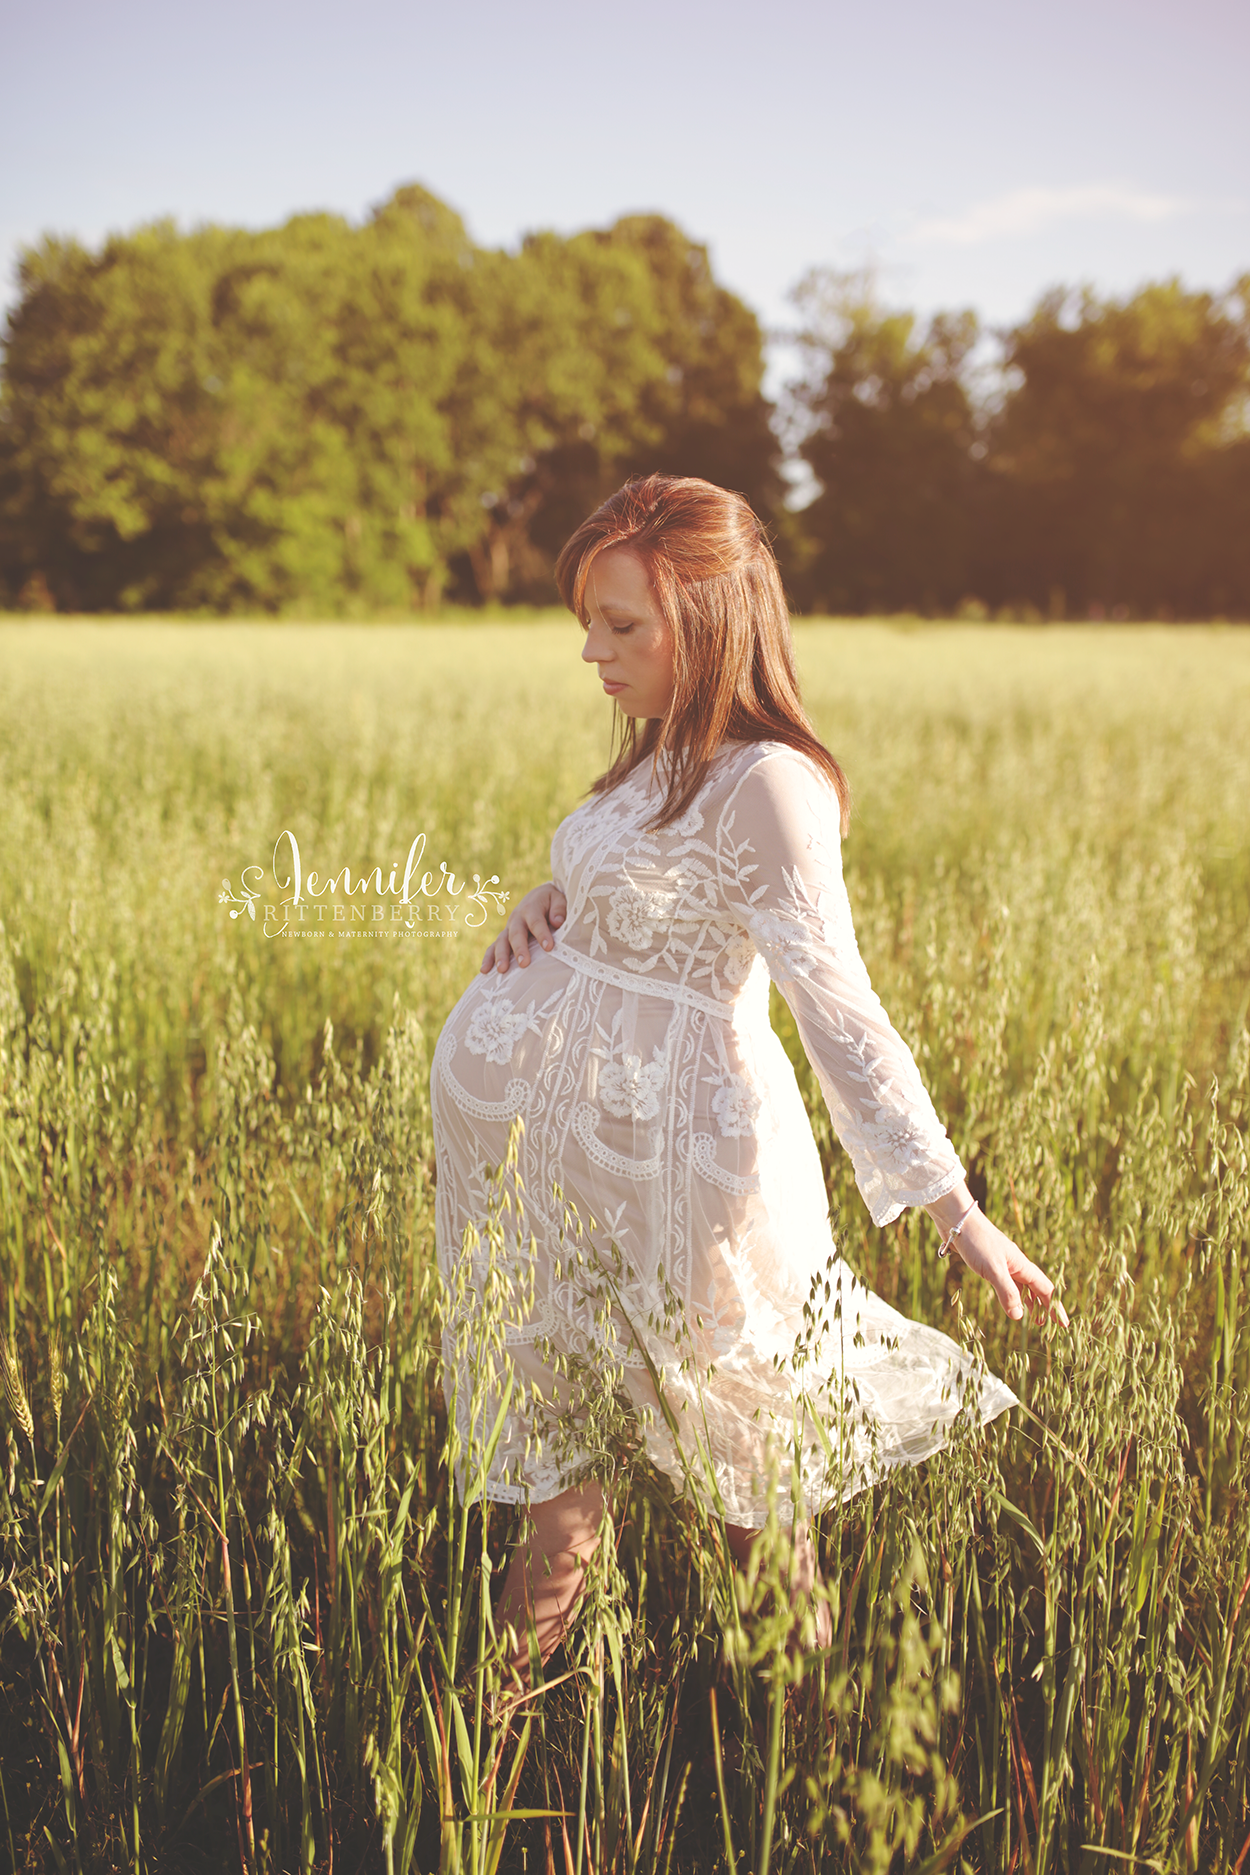 Louisville KY Maternity Photographer | Jennifer Rittenberry Photography | www.jlritt.com